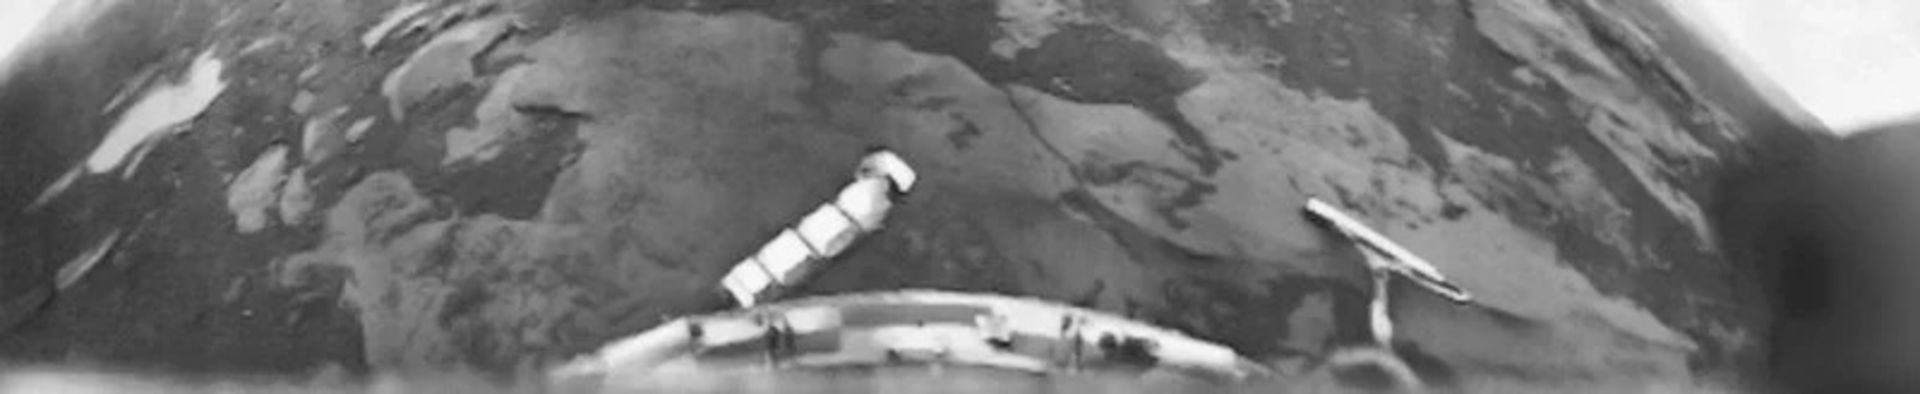 تصویر ناهید توسط فضاپیمای Venera 10 شوروی